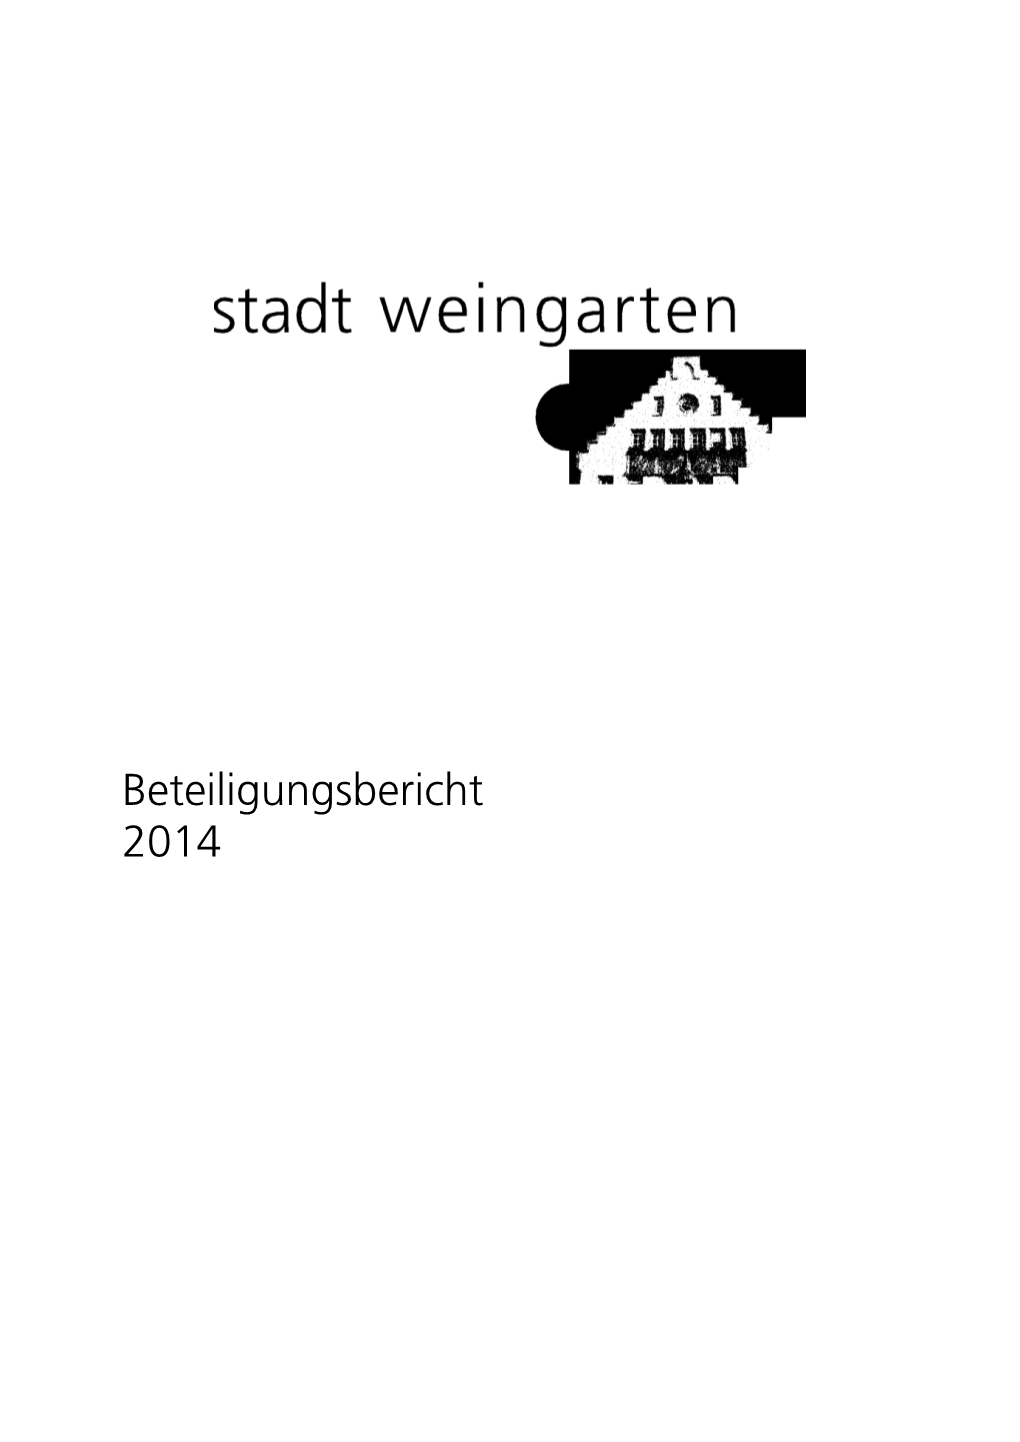 Beteiligungsbericht 2014 Beteiligungsbericht 2014 Inhaltsverzeichnis